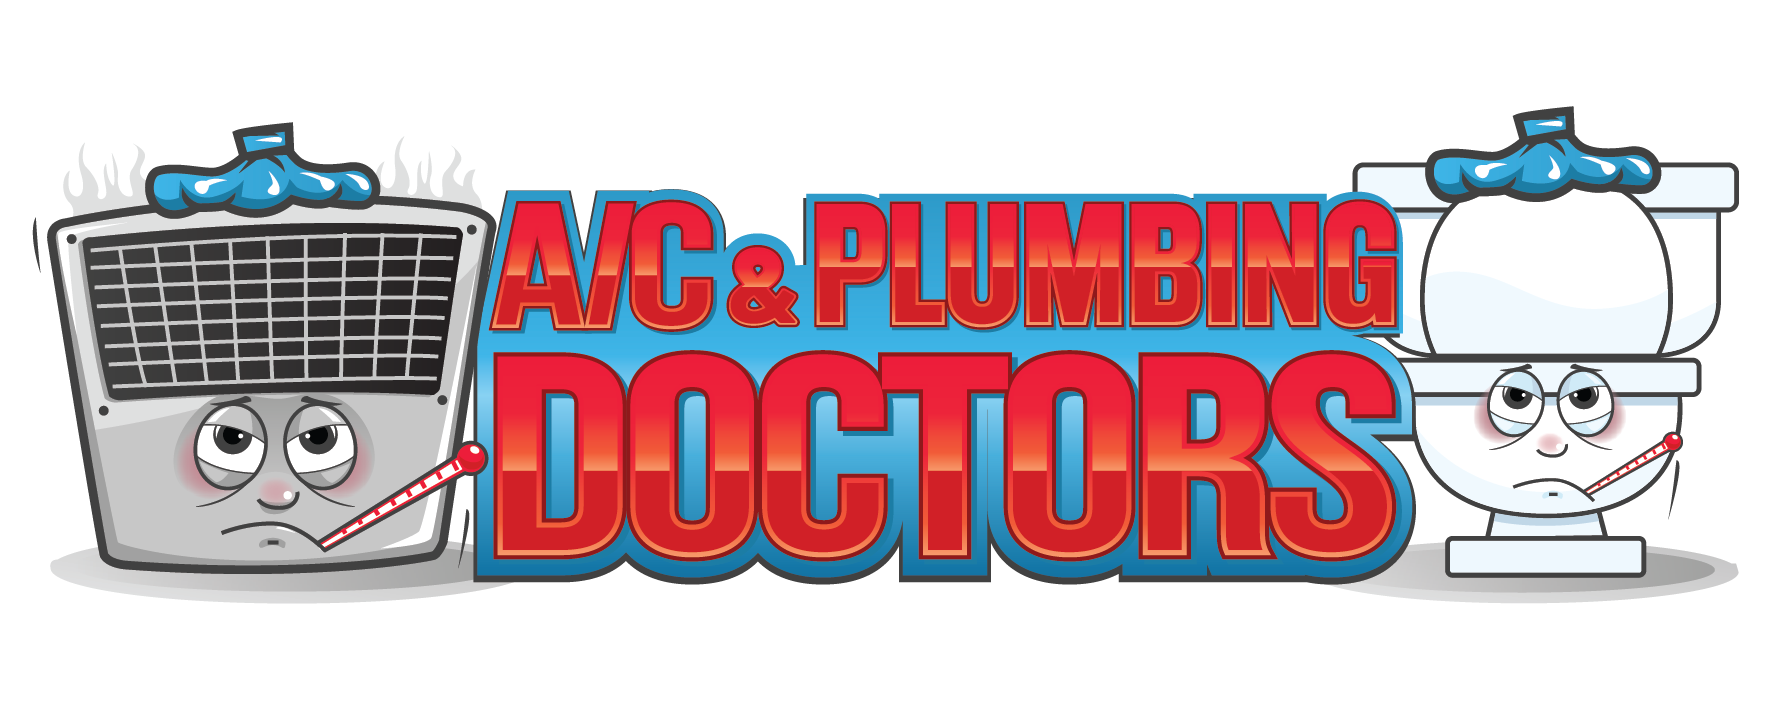 A/C Doctors logo